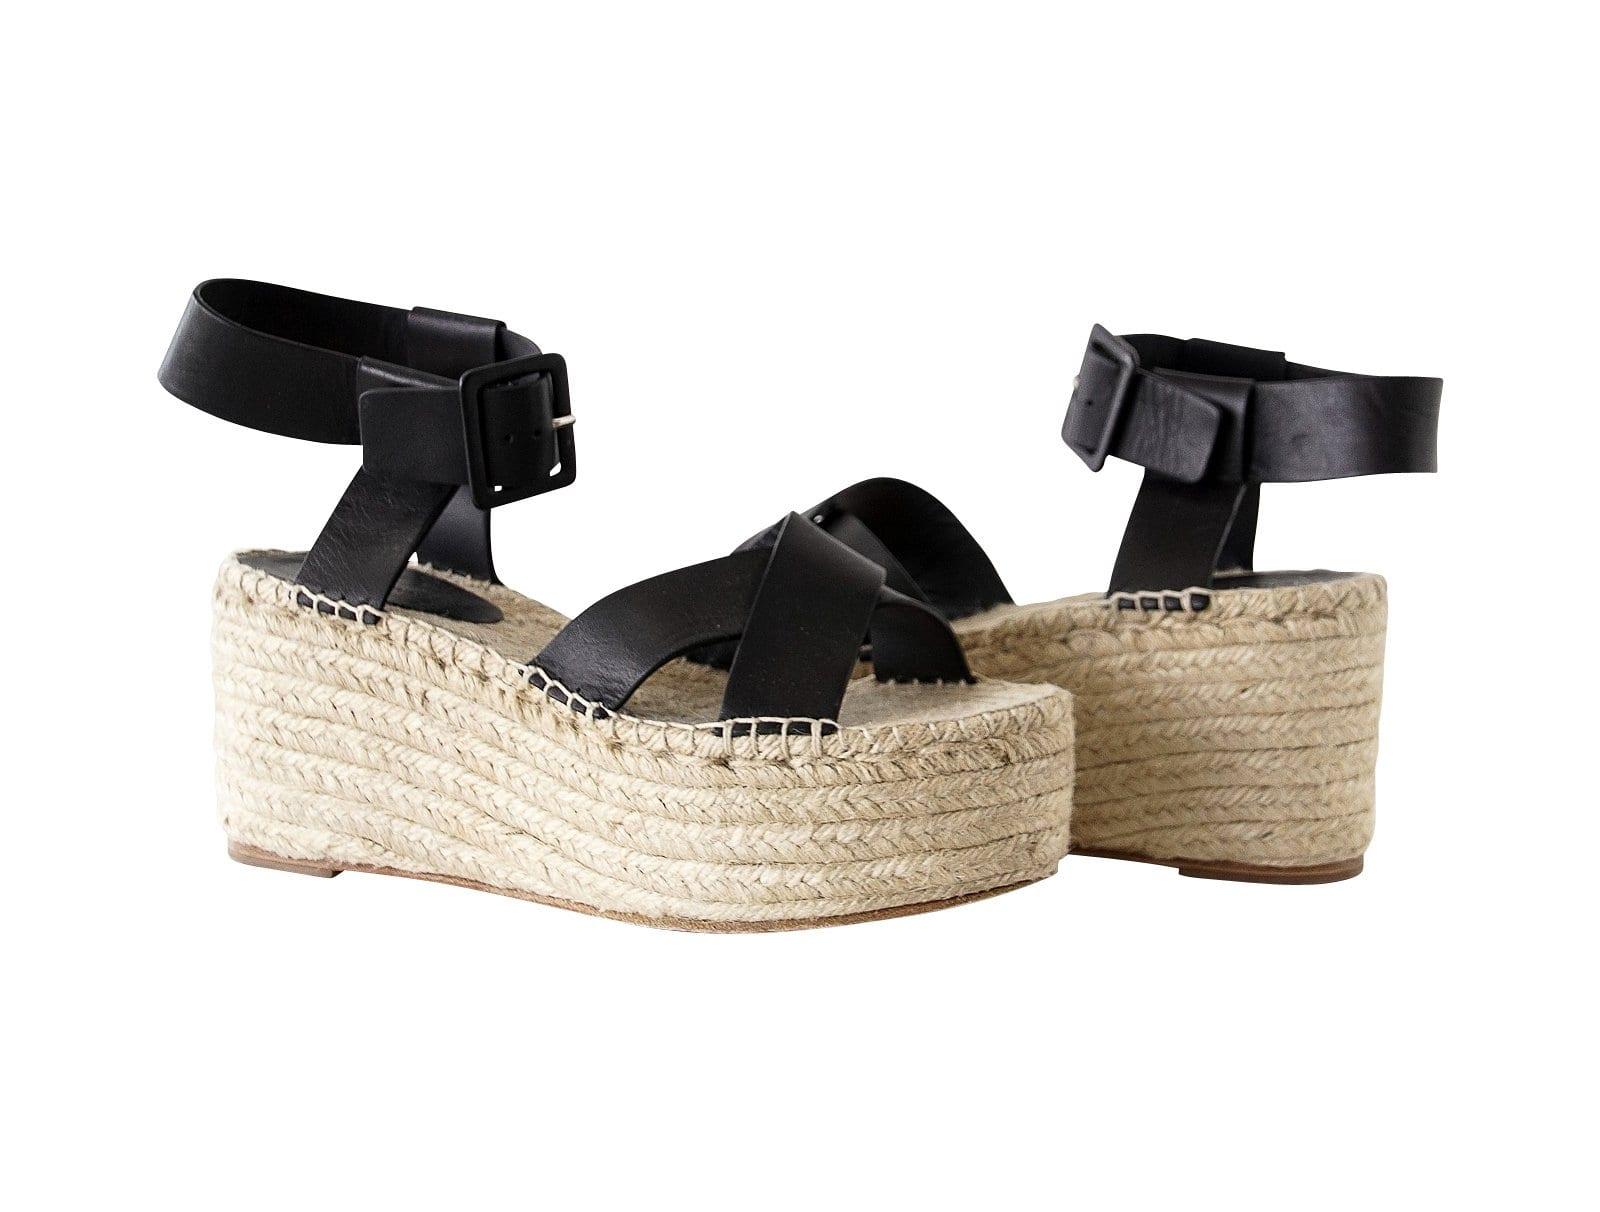 Celine Shoe Wedge Black Ankle Strap Platform Sandal 39 / 9 - mightychic